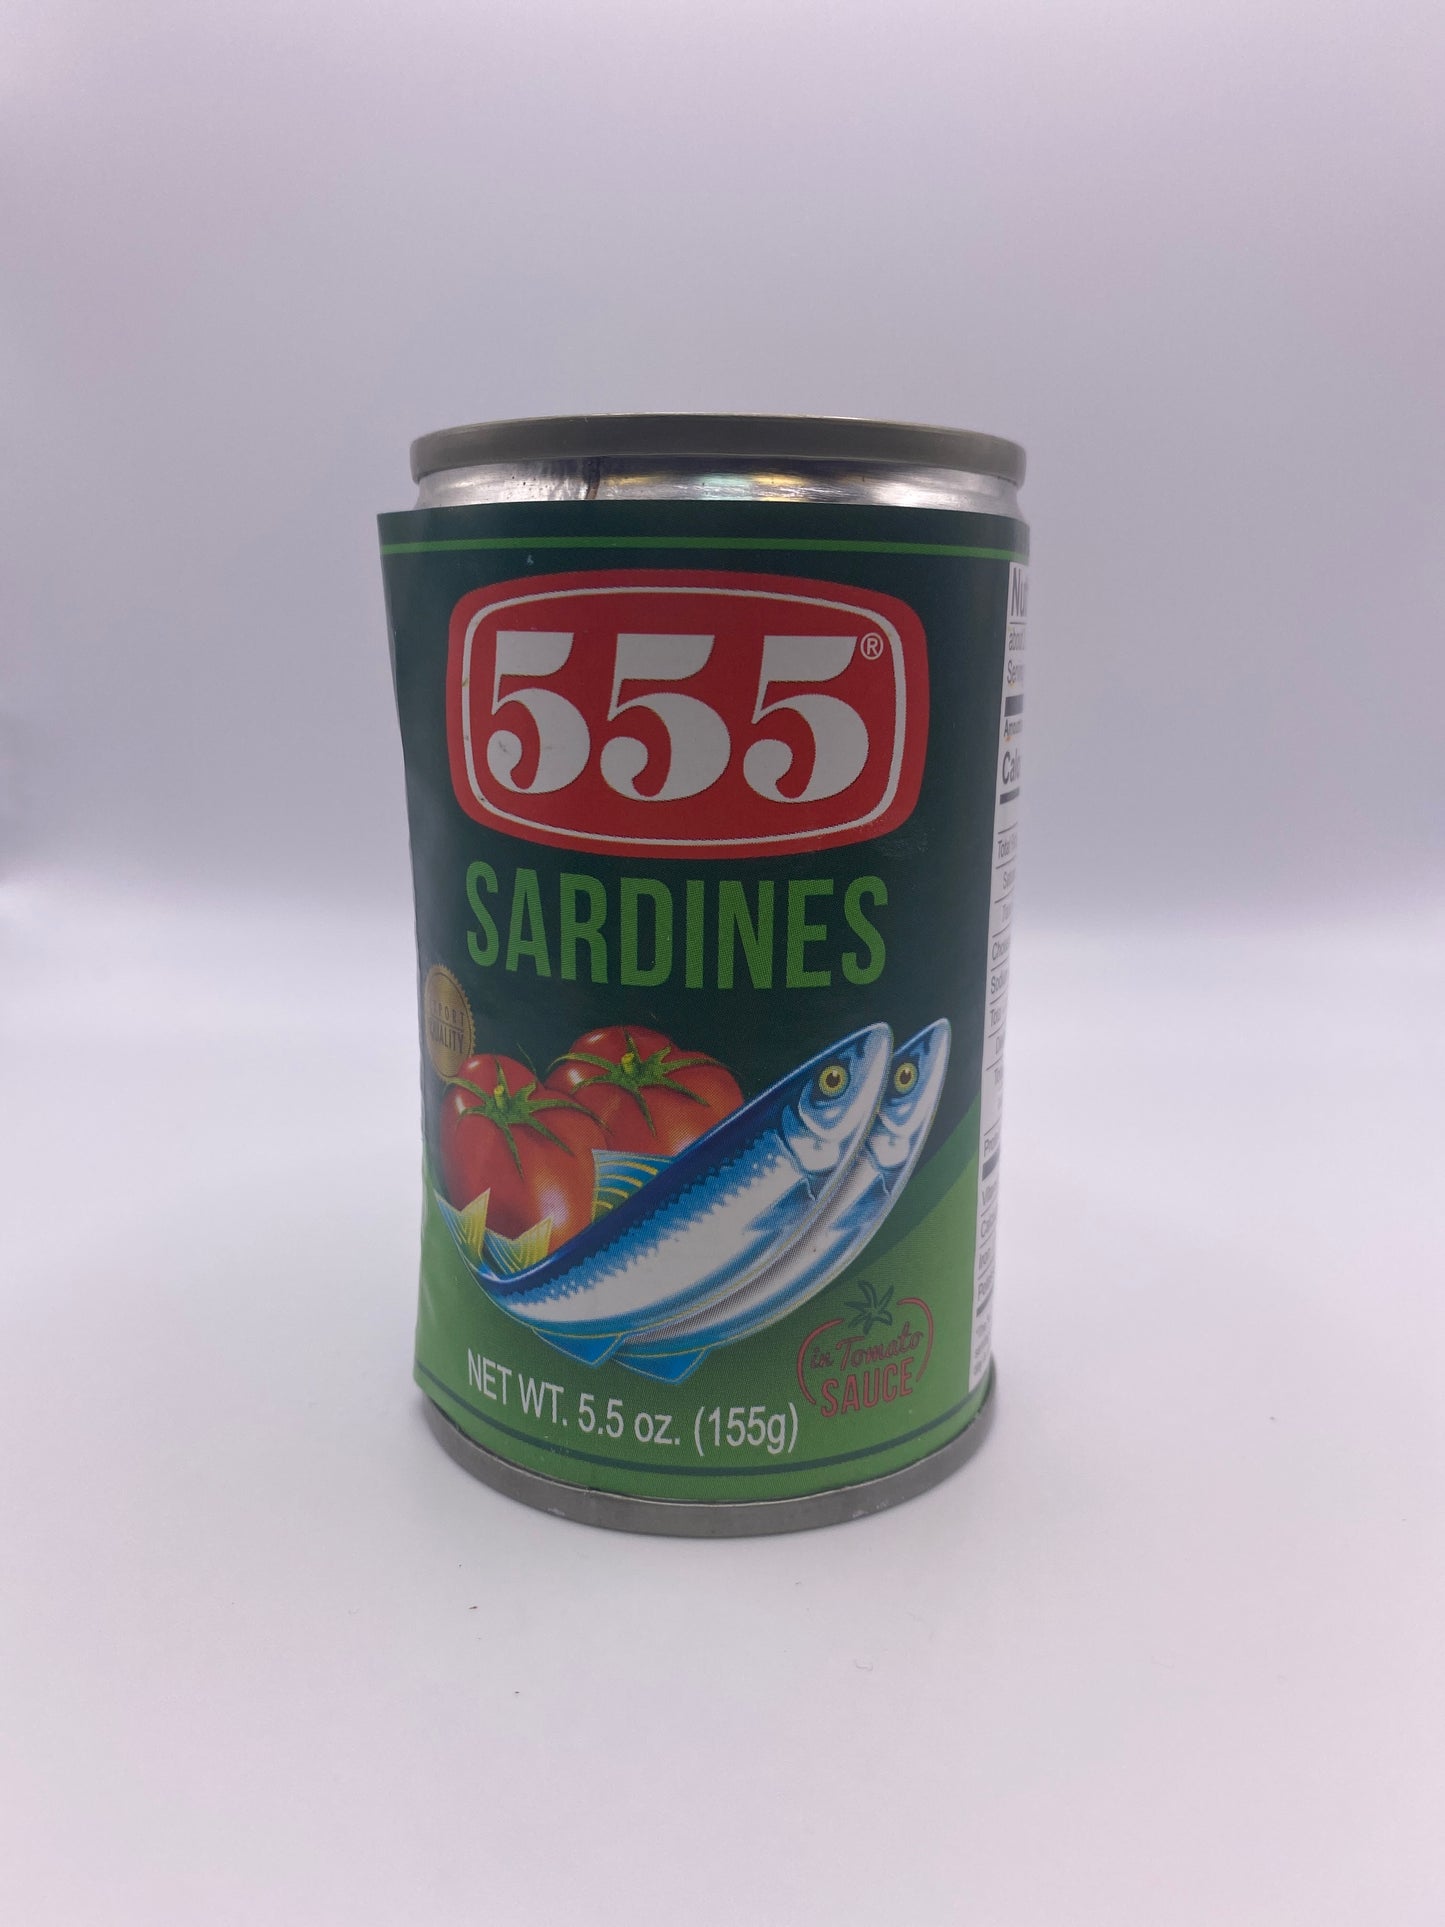 555 Sardines In Tomato Sauce - 5.5oz (sardinas)